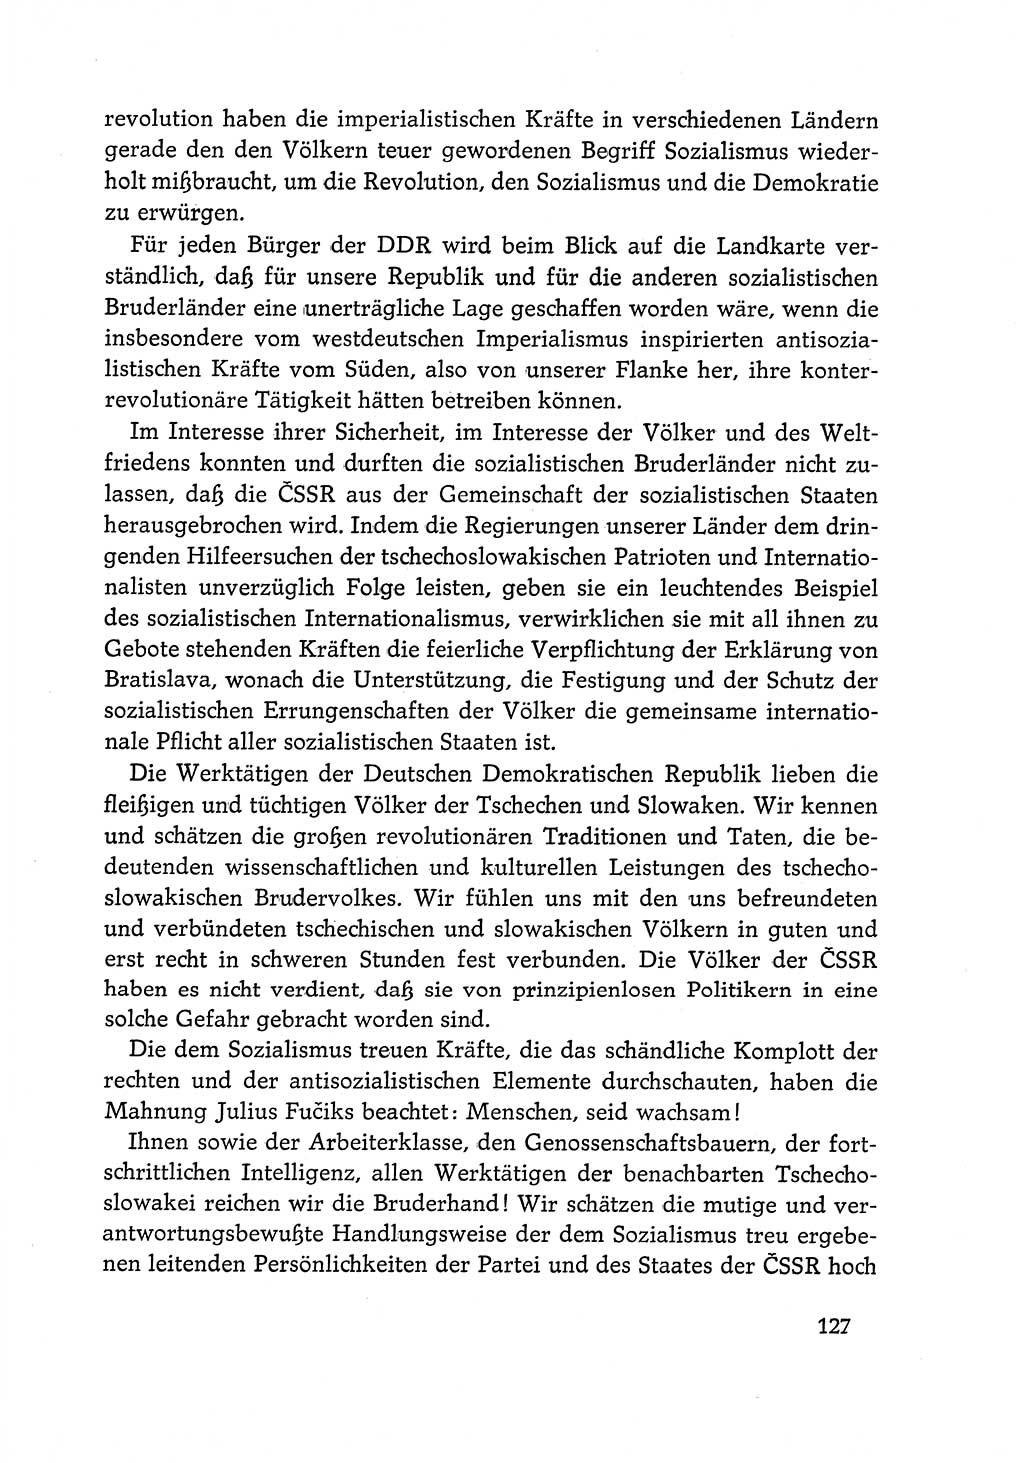 Dokumente der Sozialistischen Einheitspartei Deutschlands (SED) [Deutsche Demokratische Republik (DDR)] 1968-1969, Seite 127 (Dok. SED DDR 1968-1969, S. 127)